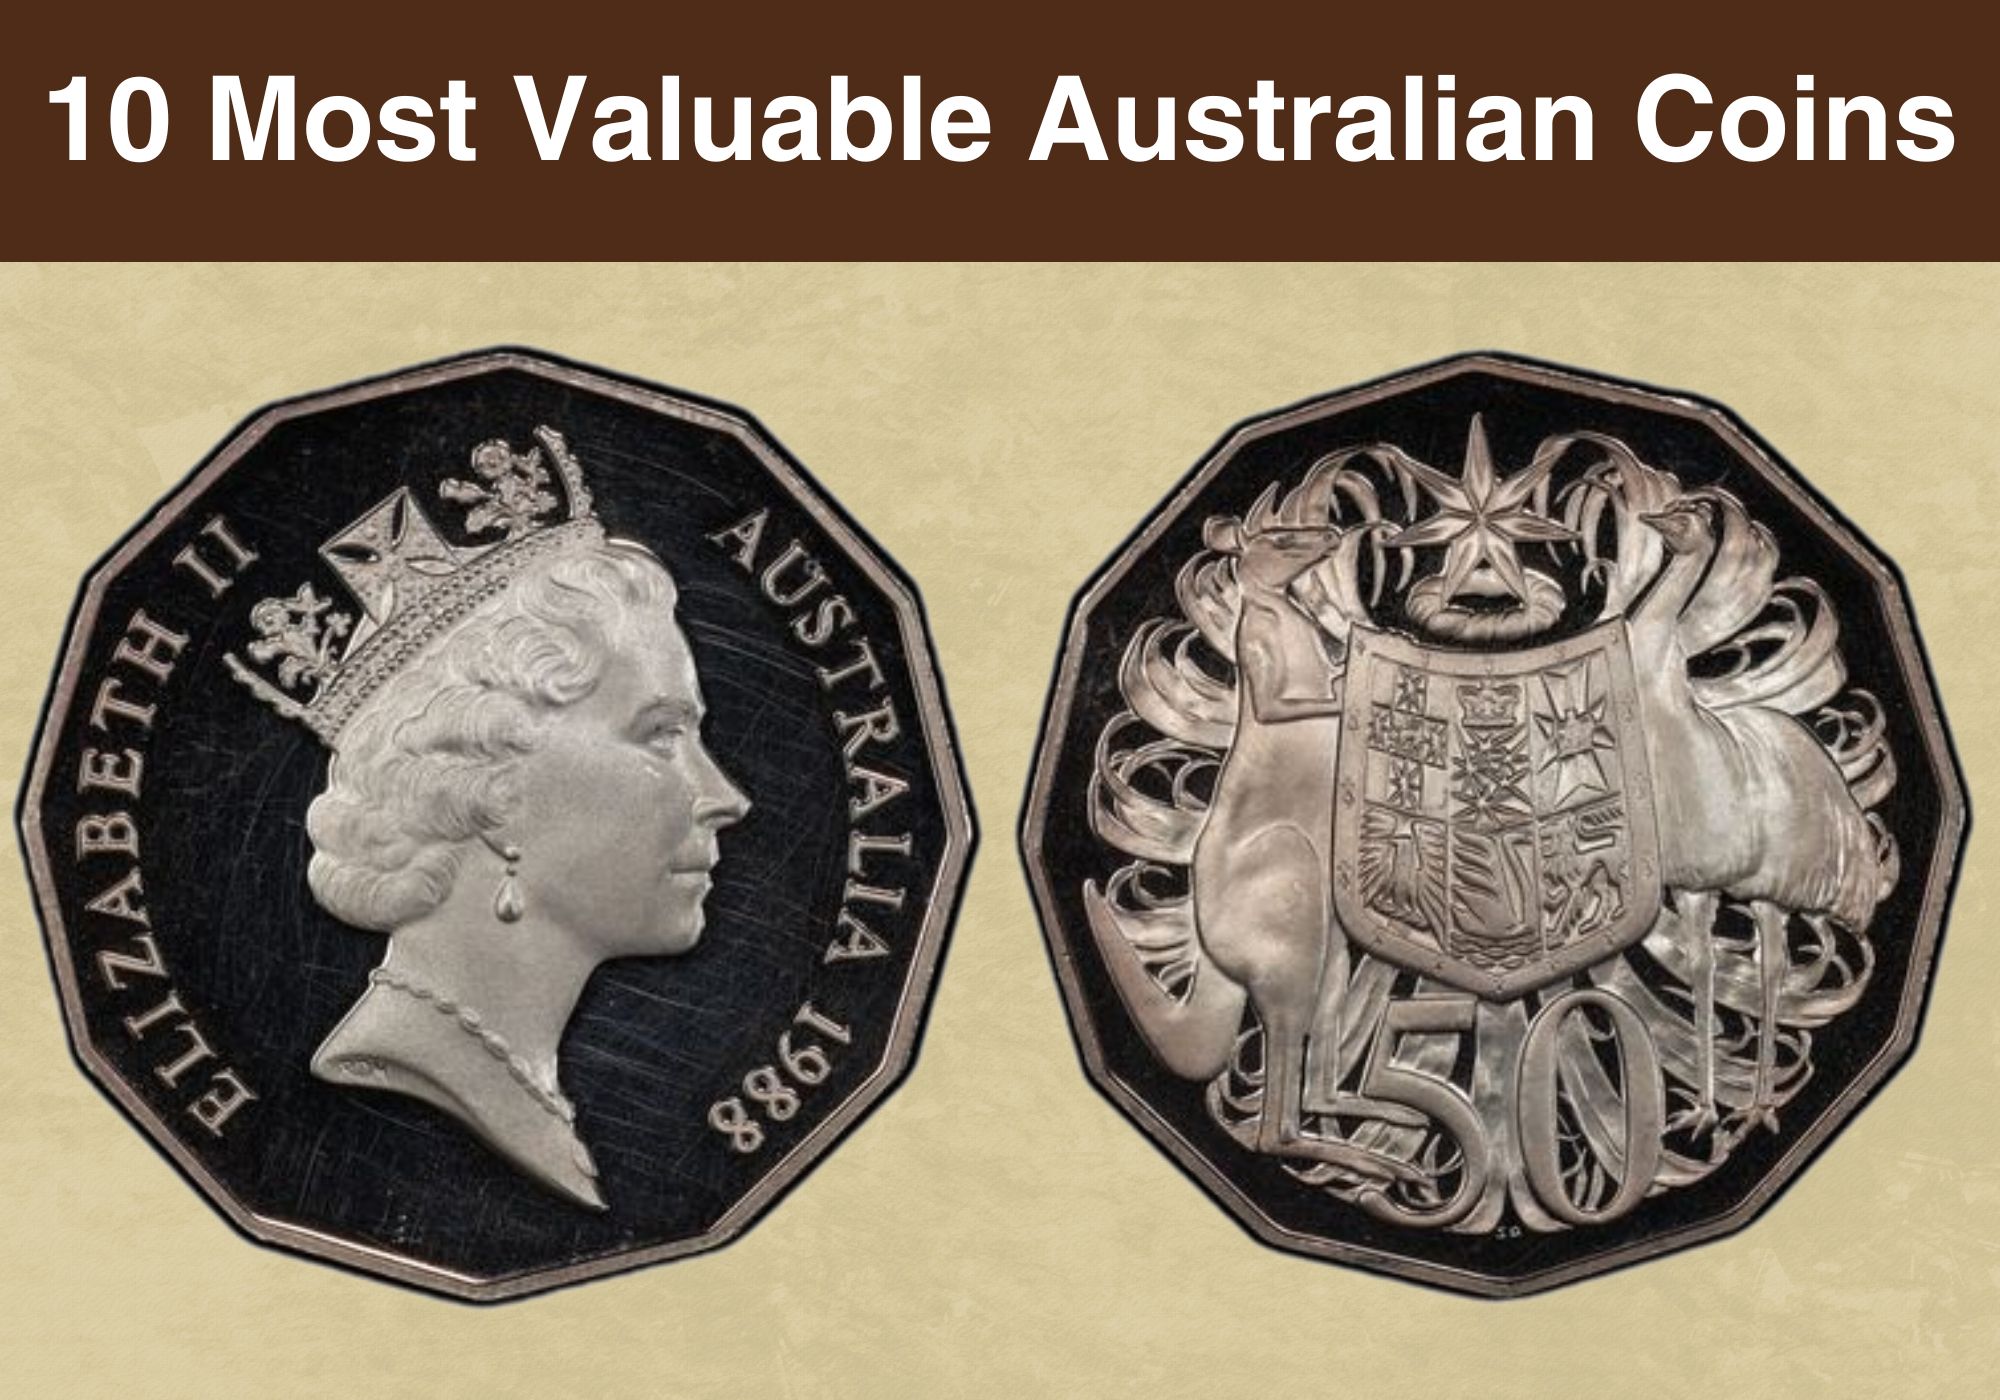 Rare Coins, Valuable Rare Coins